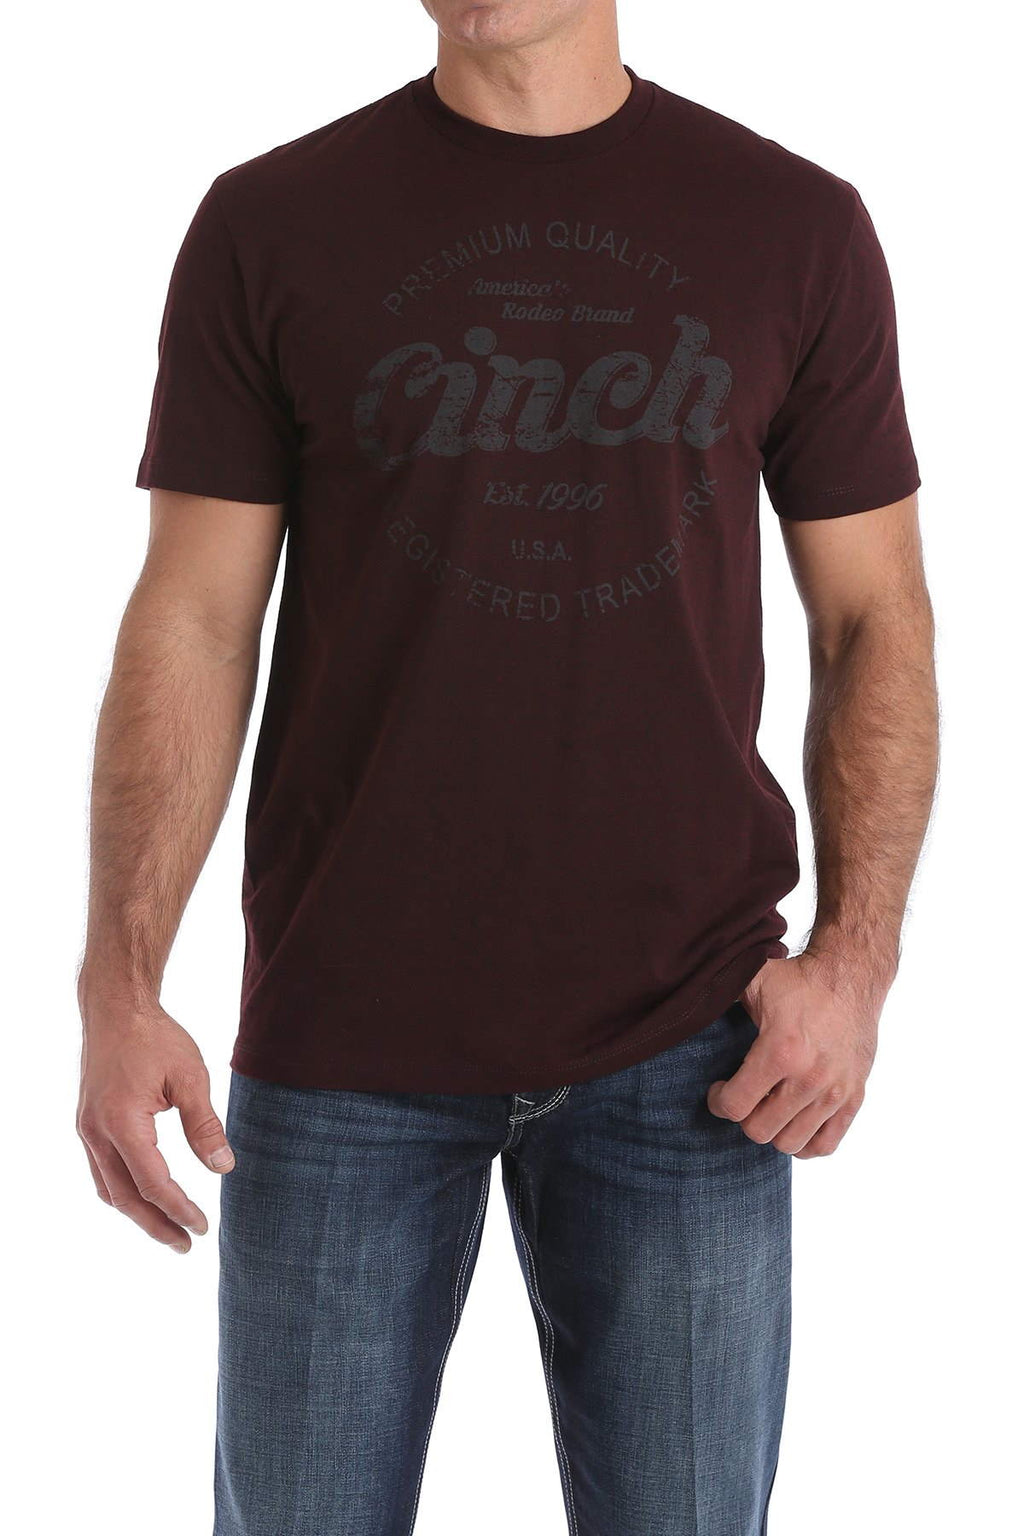 CINCH Men's Short Sleeve T-Shirt